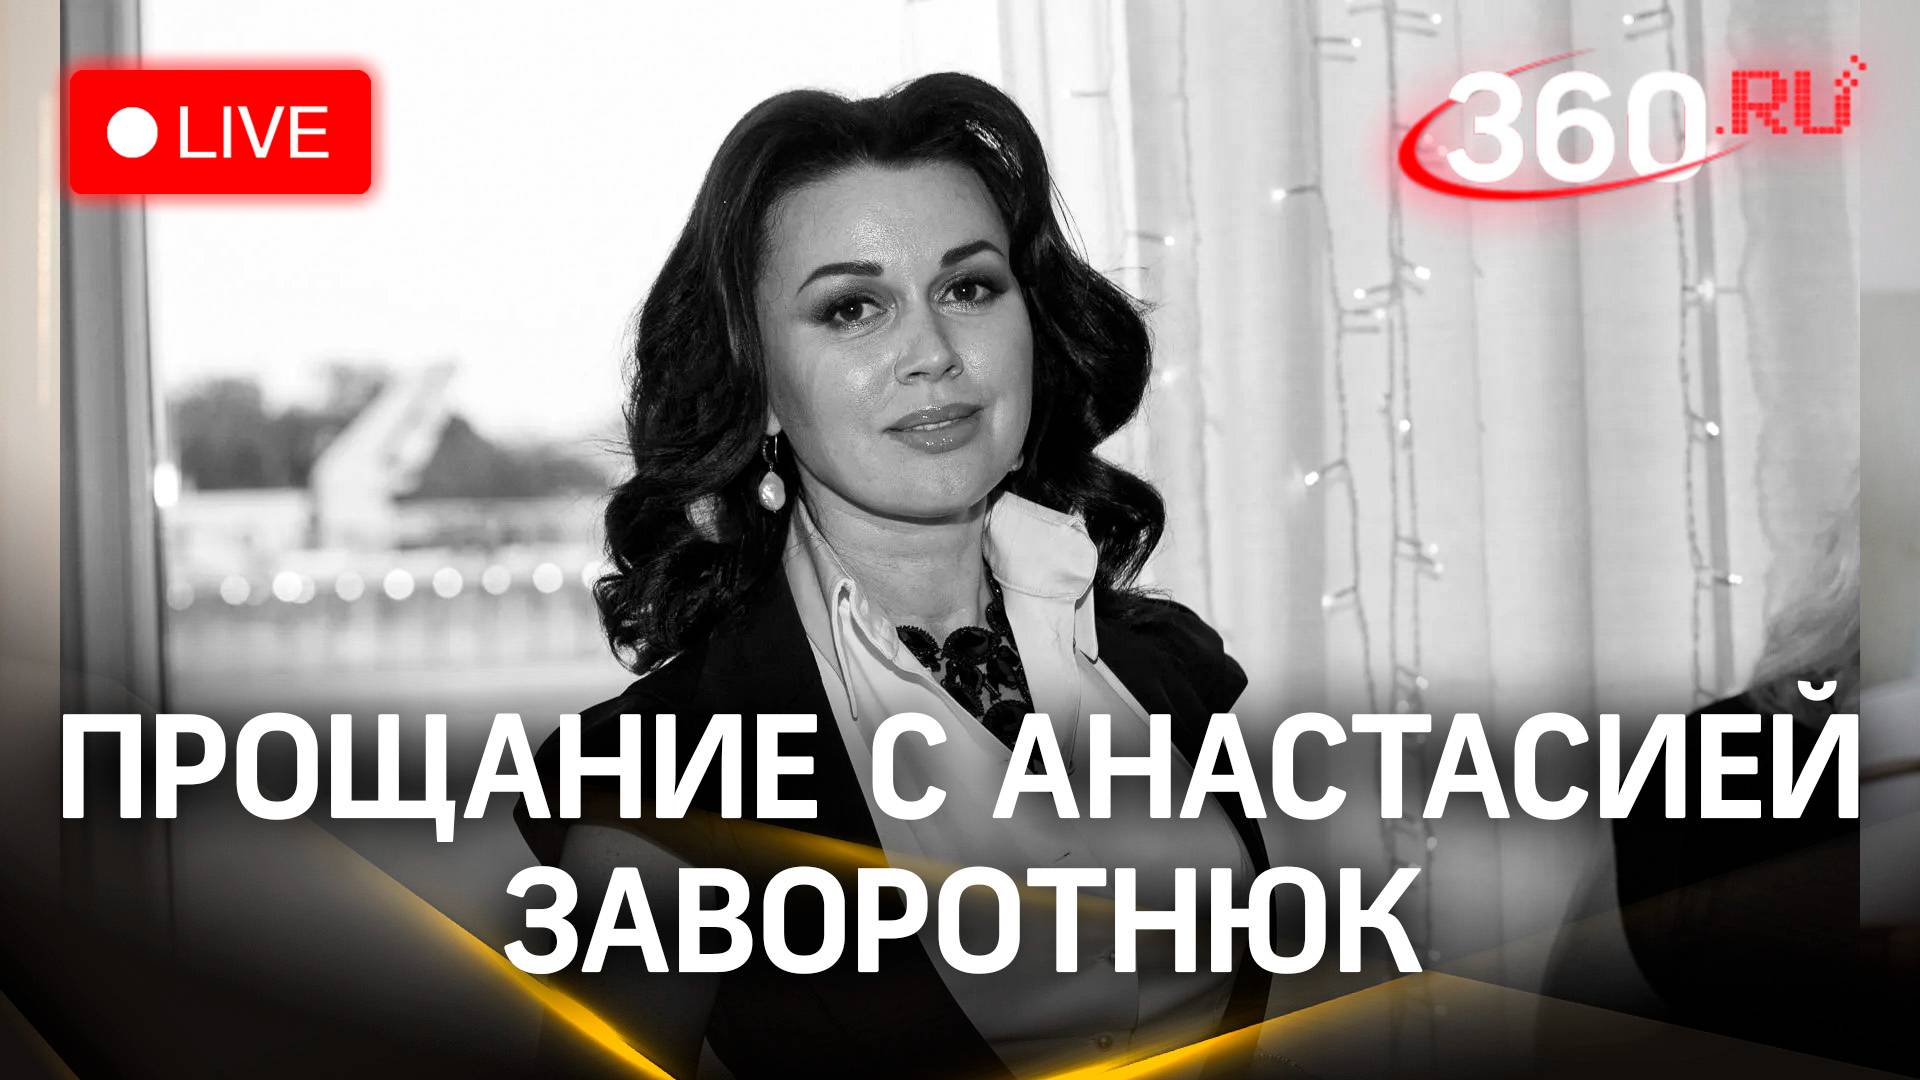 Прощание с Анастасией Заворотнюк в Москве | Трансляция